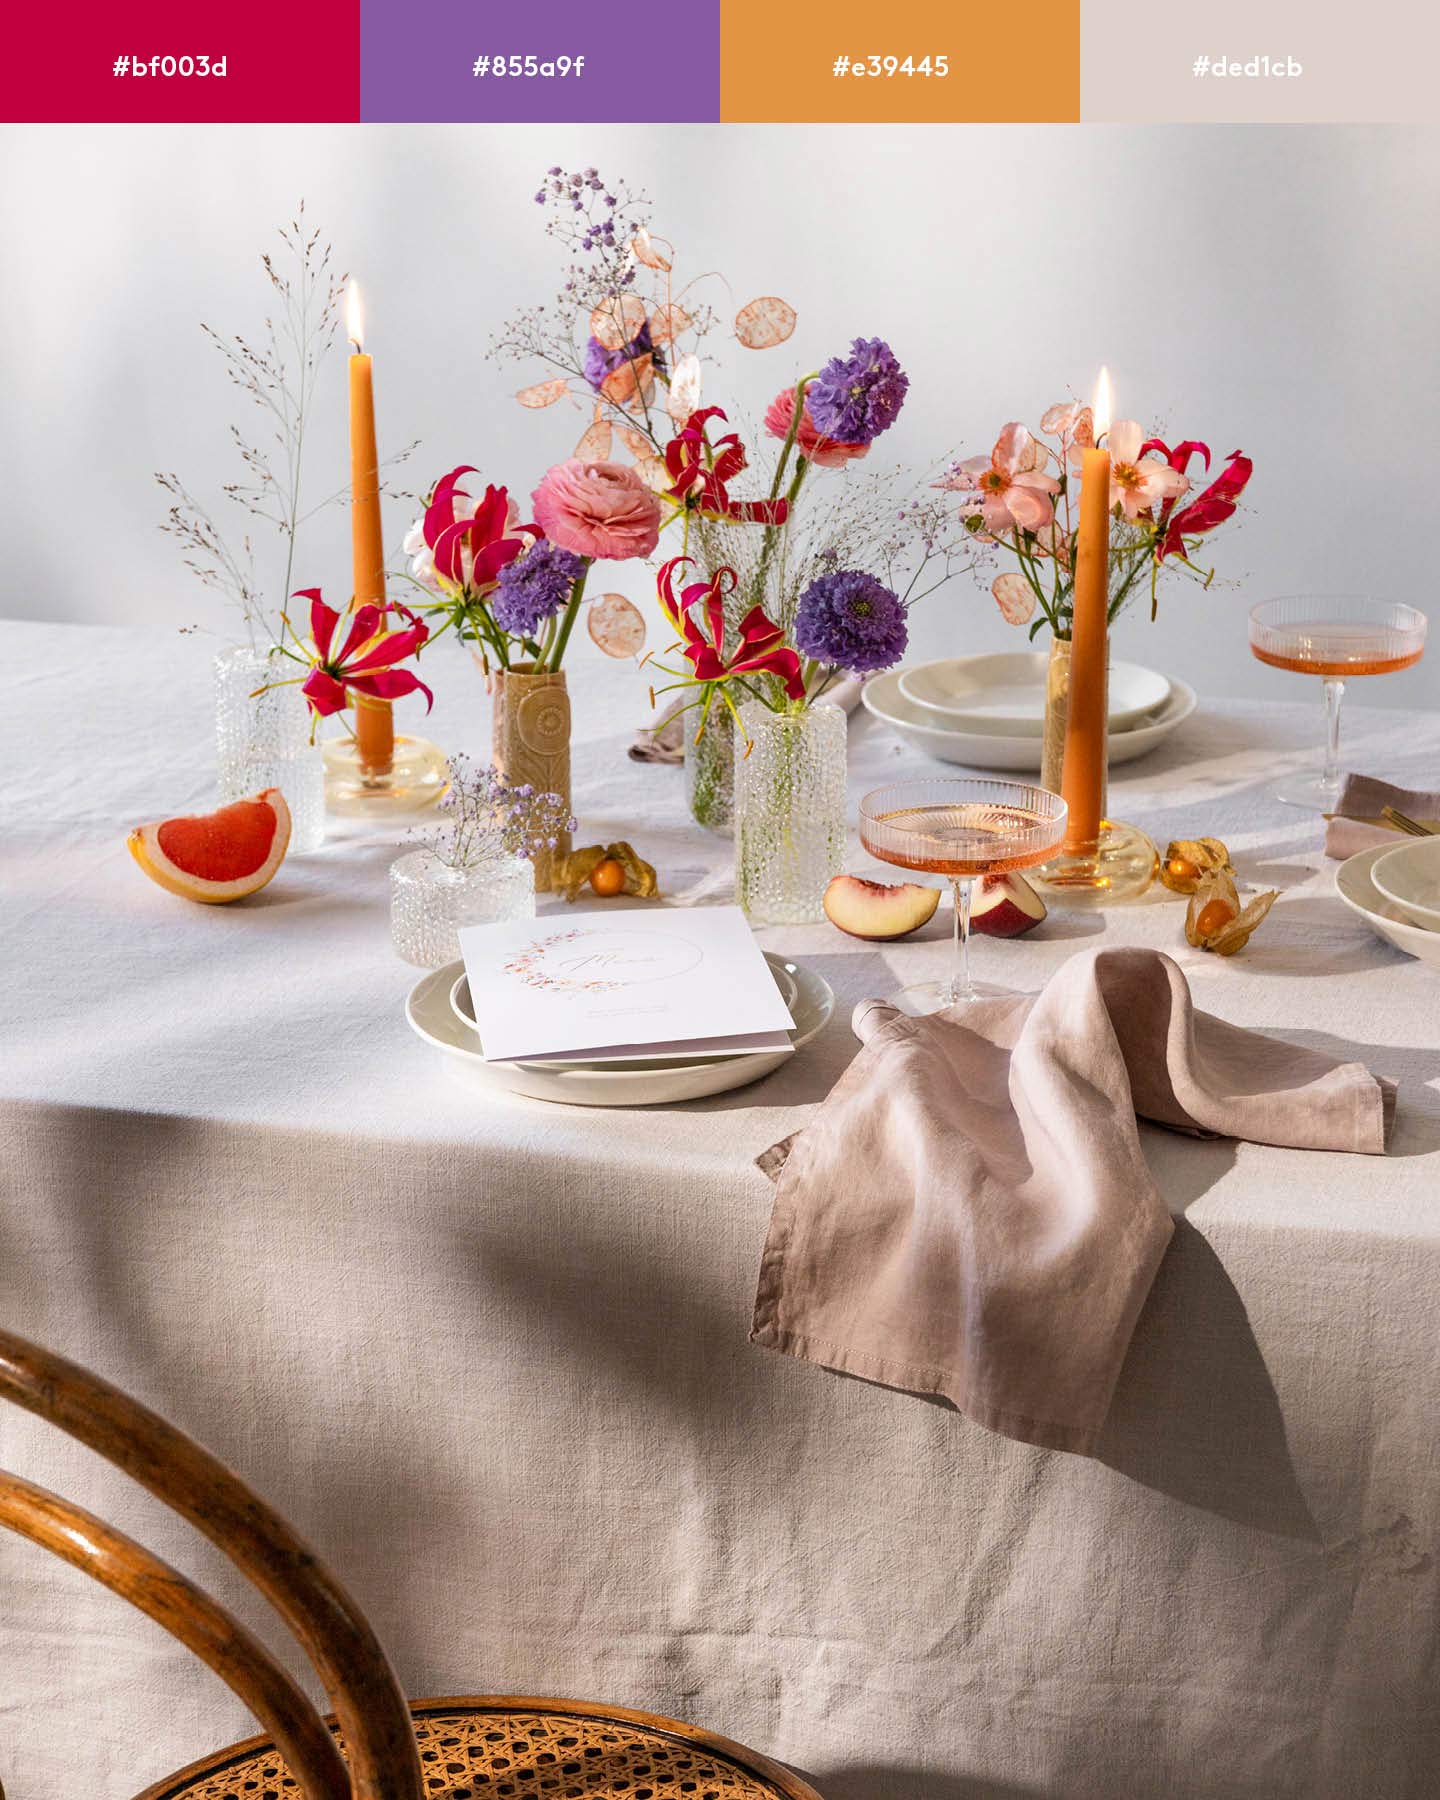 Eine Hochzeitstafel ist mit bunten Blumen in Orange, Rot und Lila dekoriert.